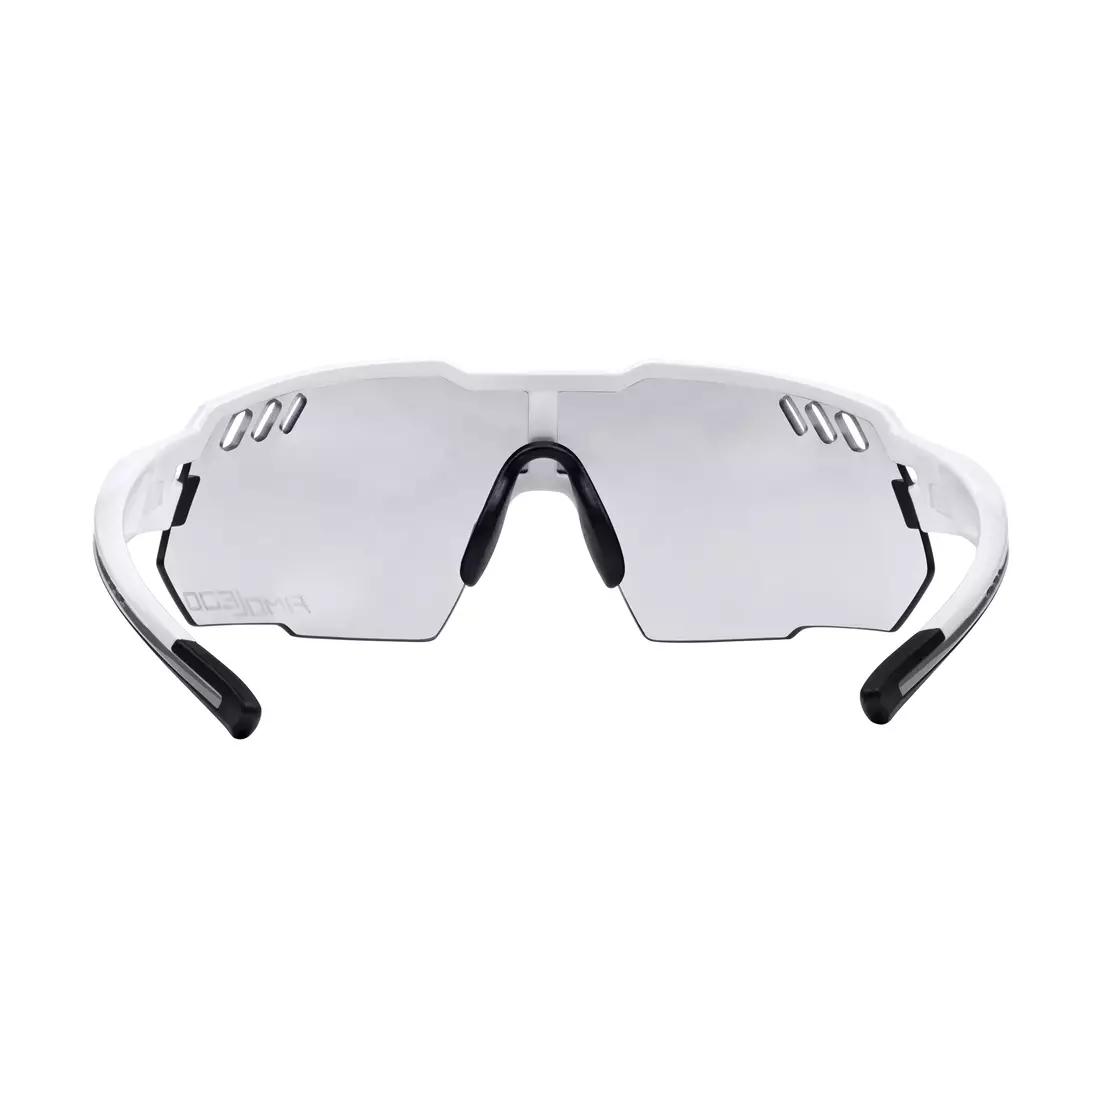 FORCE sportovní brýle AMOLEDO Fotochromní, černá a šedá, 910882